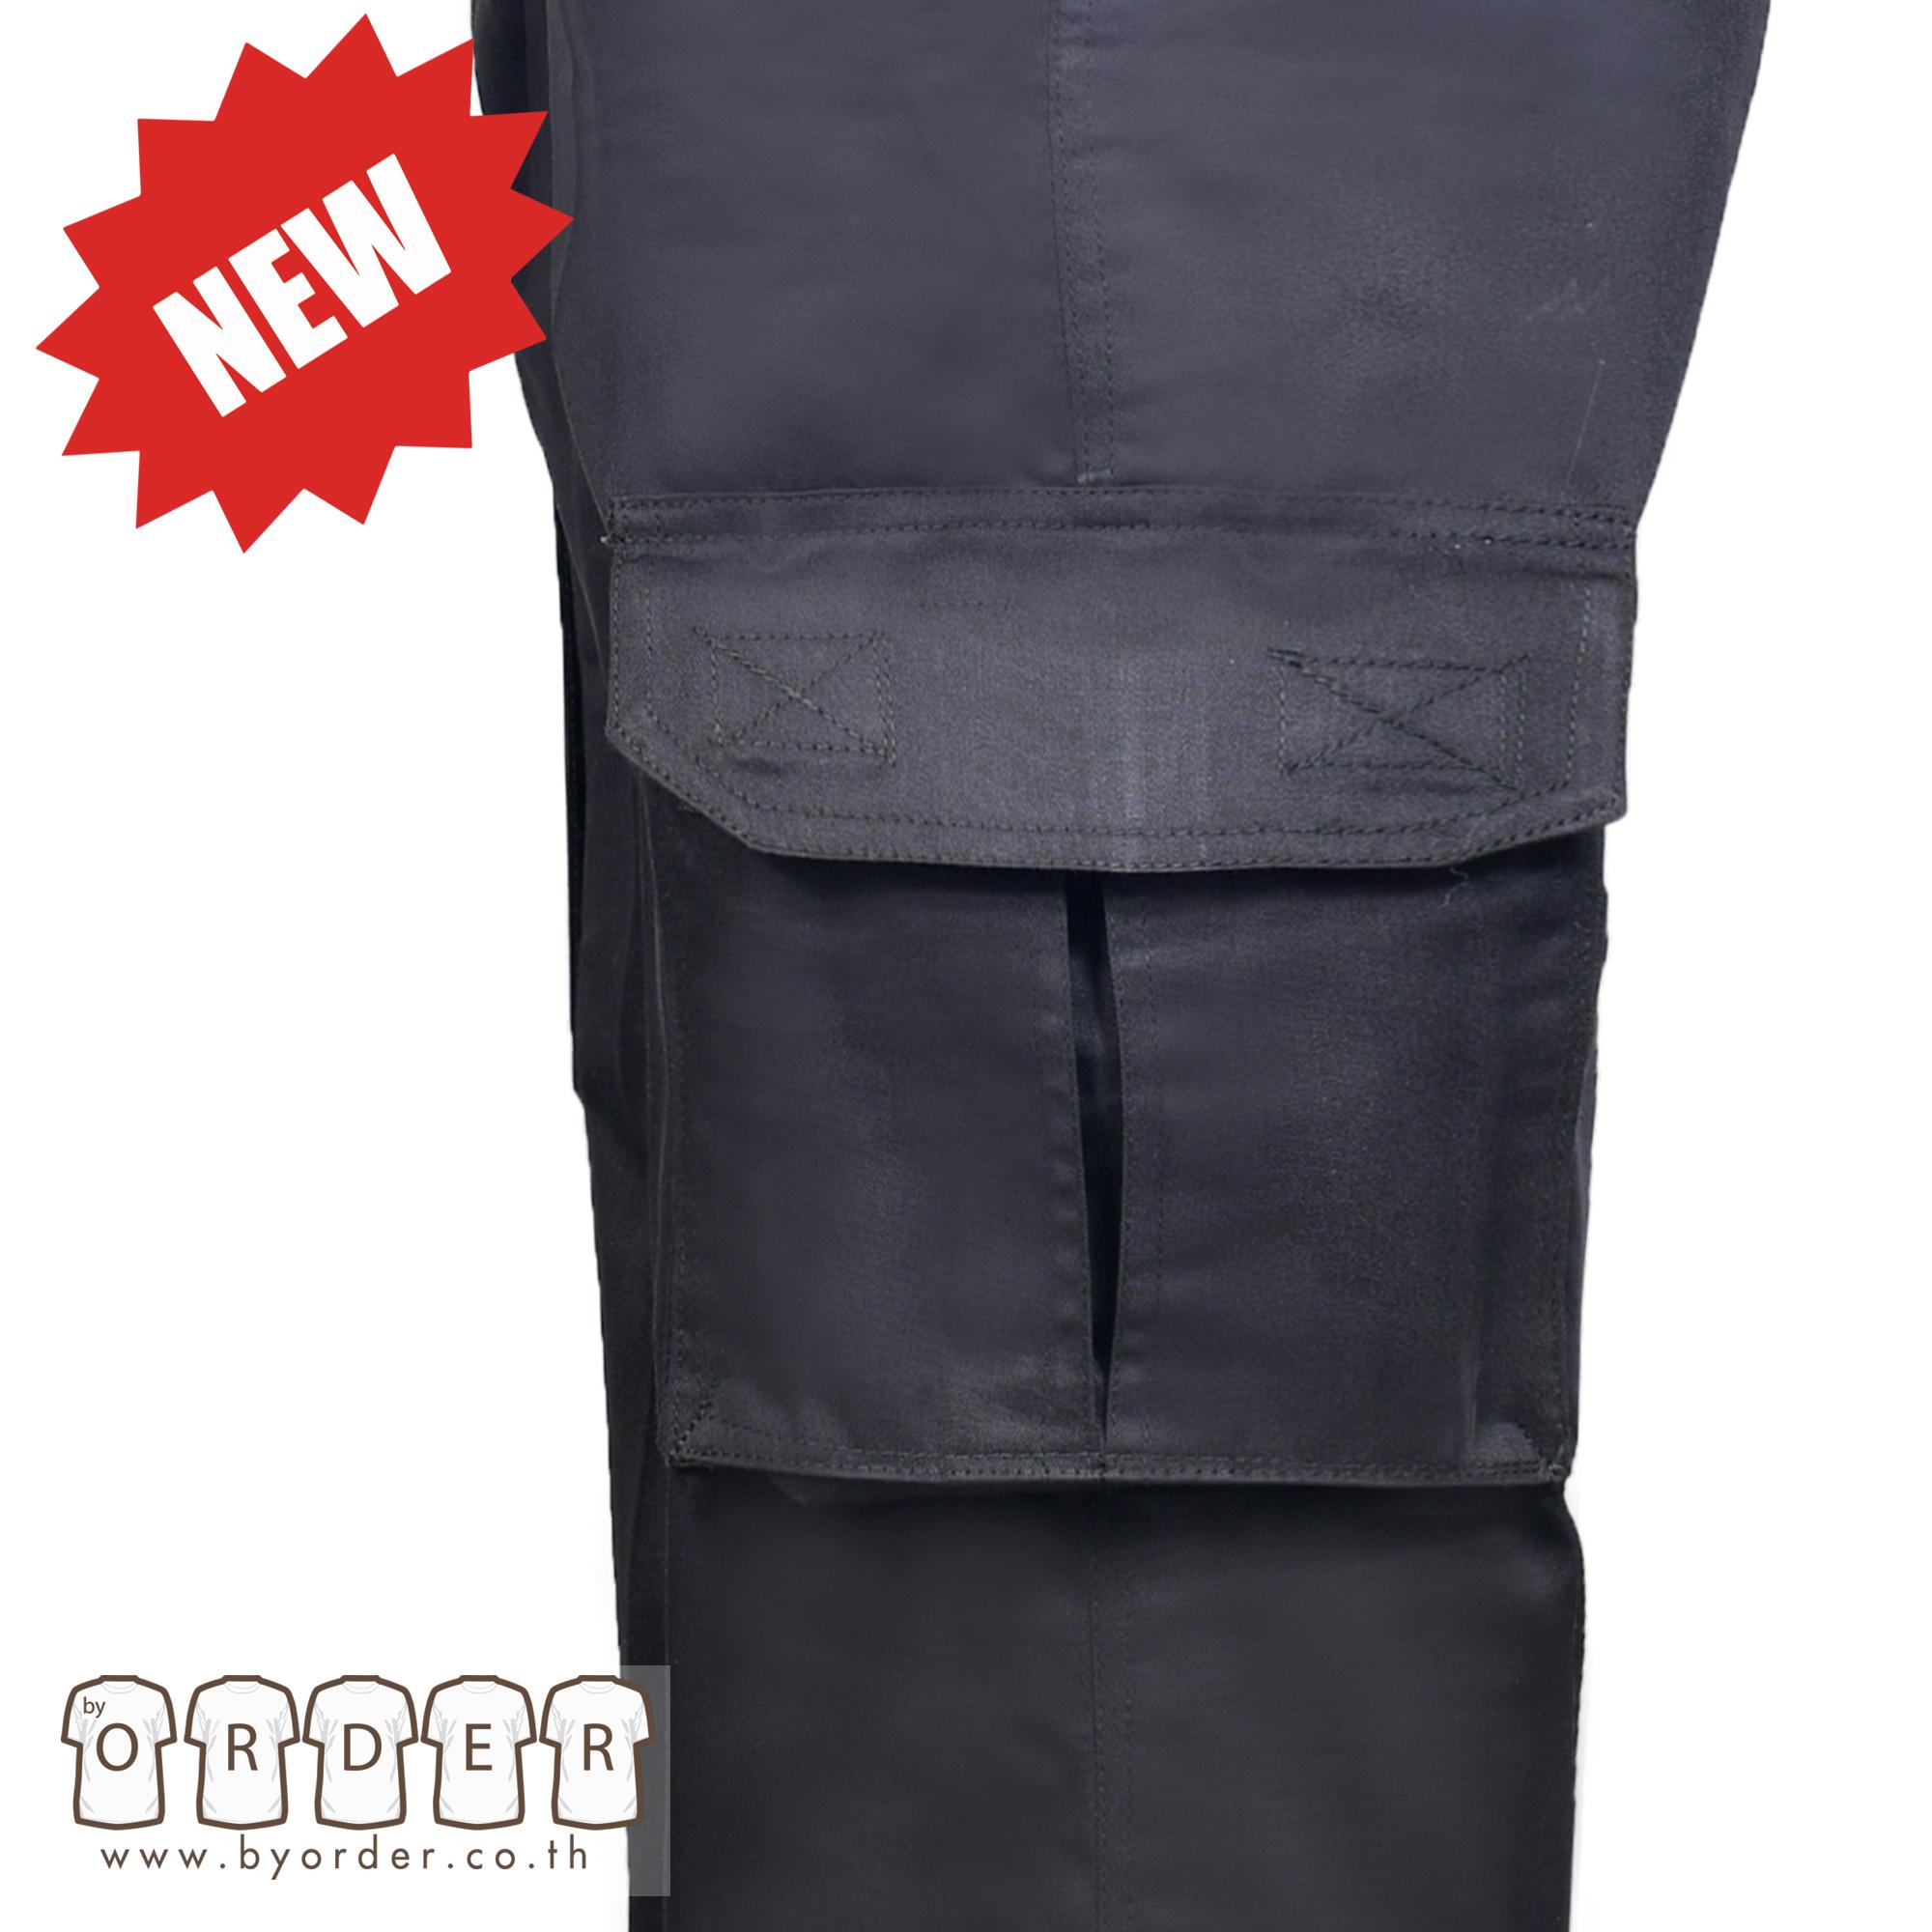 กางเกงคาร์โก้รุ่น  V02 กางเกงขายาวอย่างดี สีดำ กางเกงช่าง กางเกงทำงาน   สินค้าขายคุณภาพแบรนด์เนม ใช้ทน คุ้มค่าแน่นอน สี ดำ ขนาด เอว 40 สี ดำขนาด เอว 40